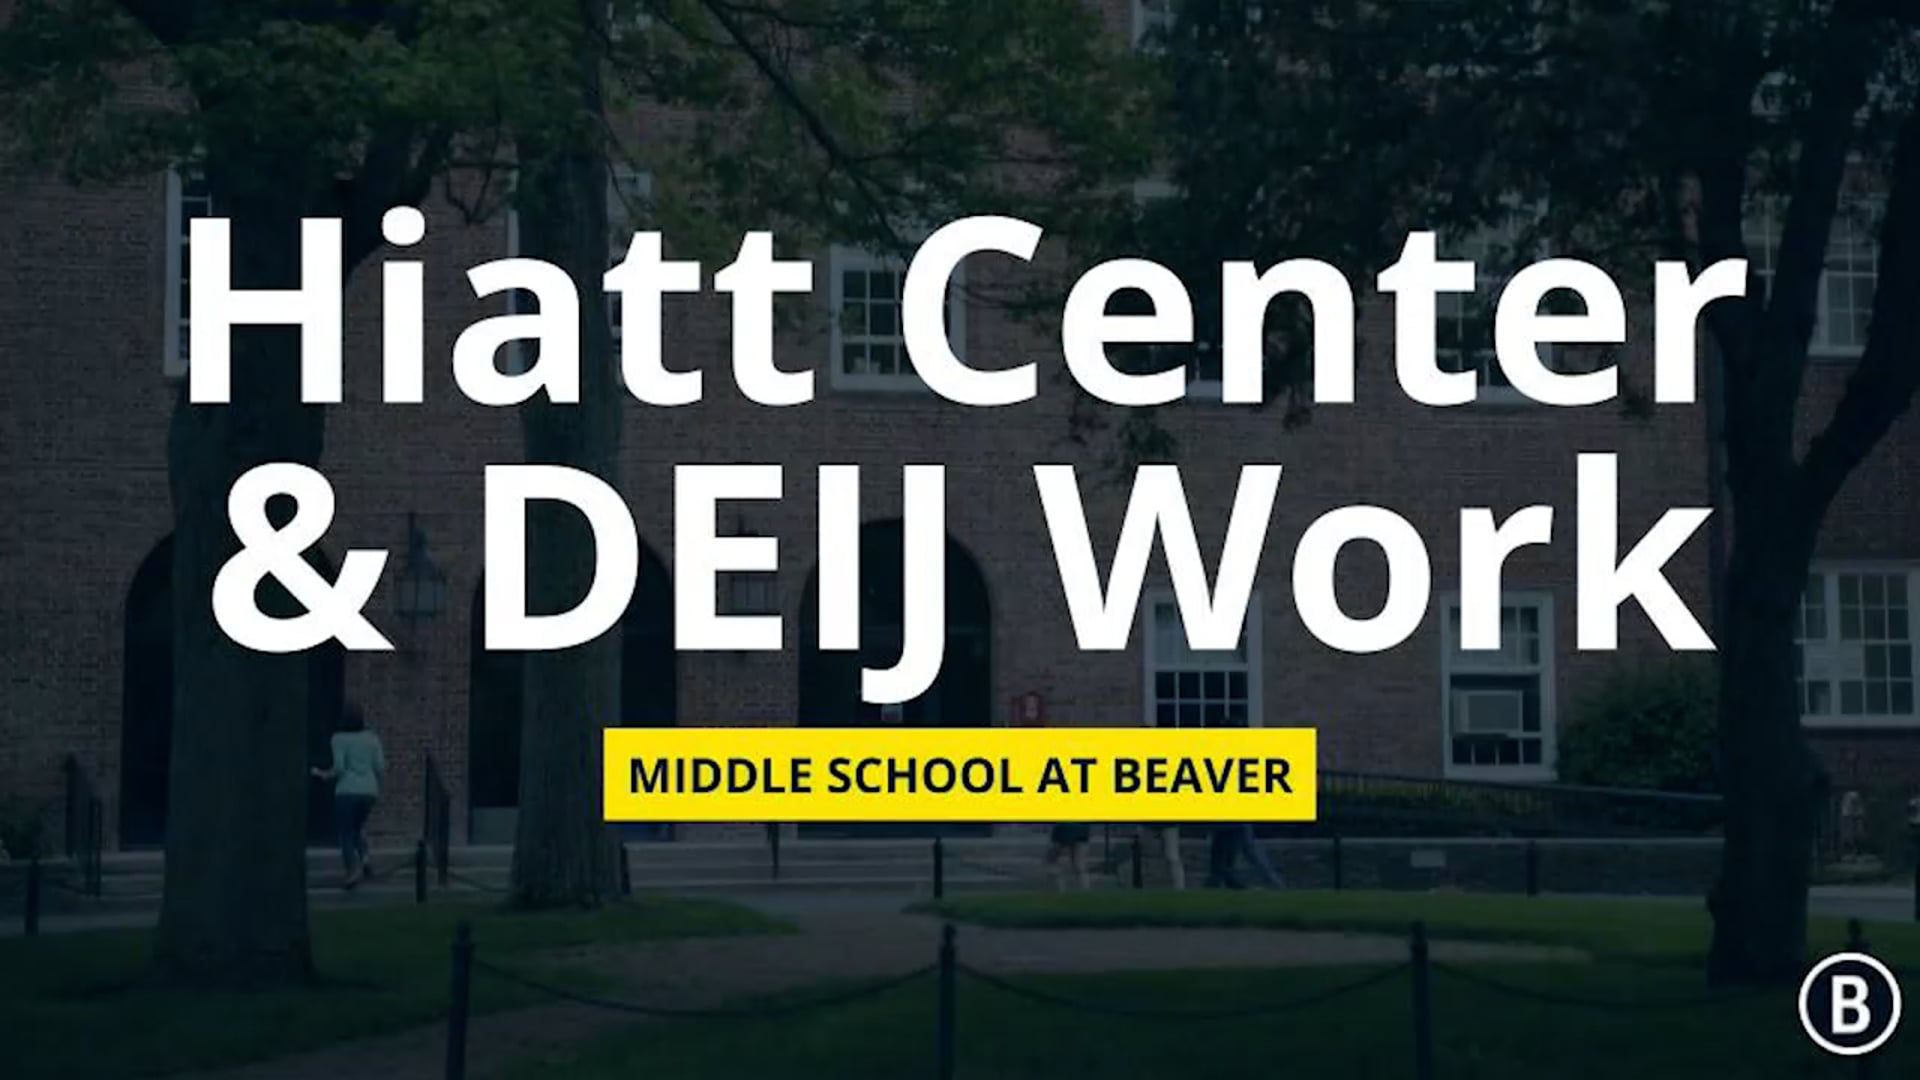 Hiatt Center & DEIJ Work